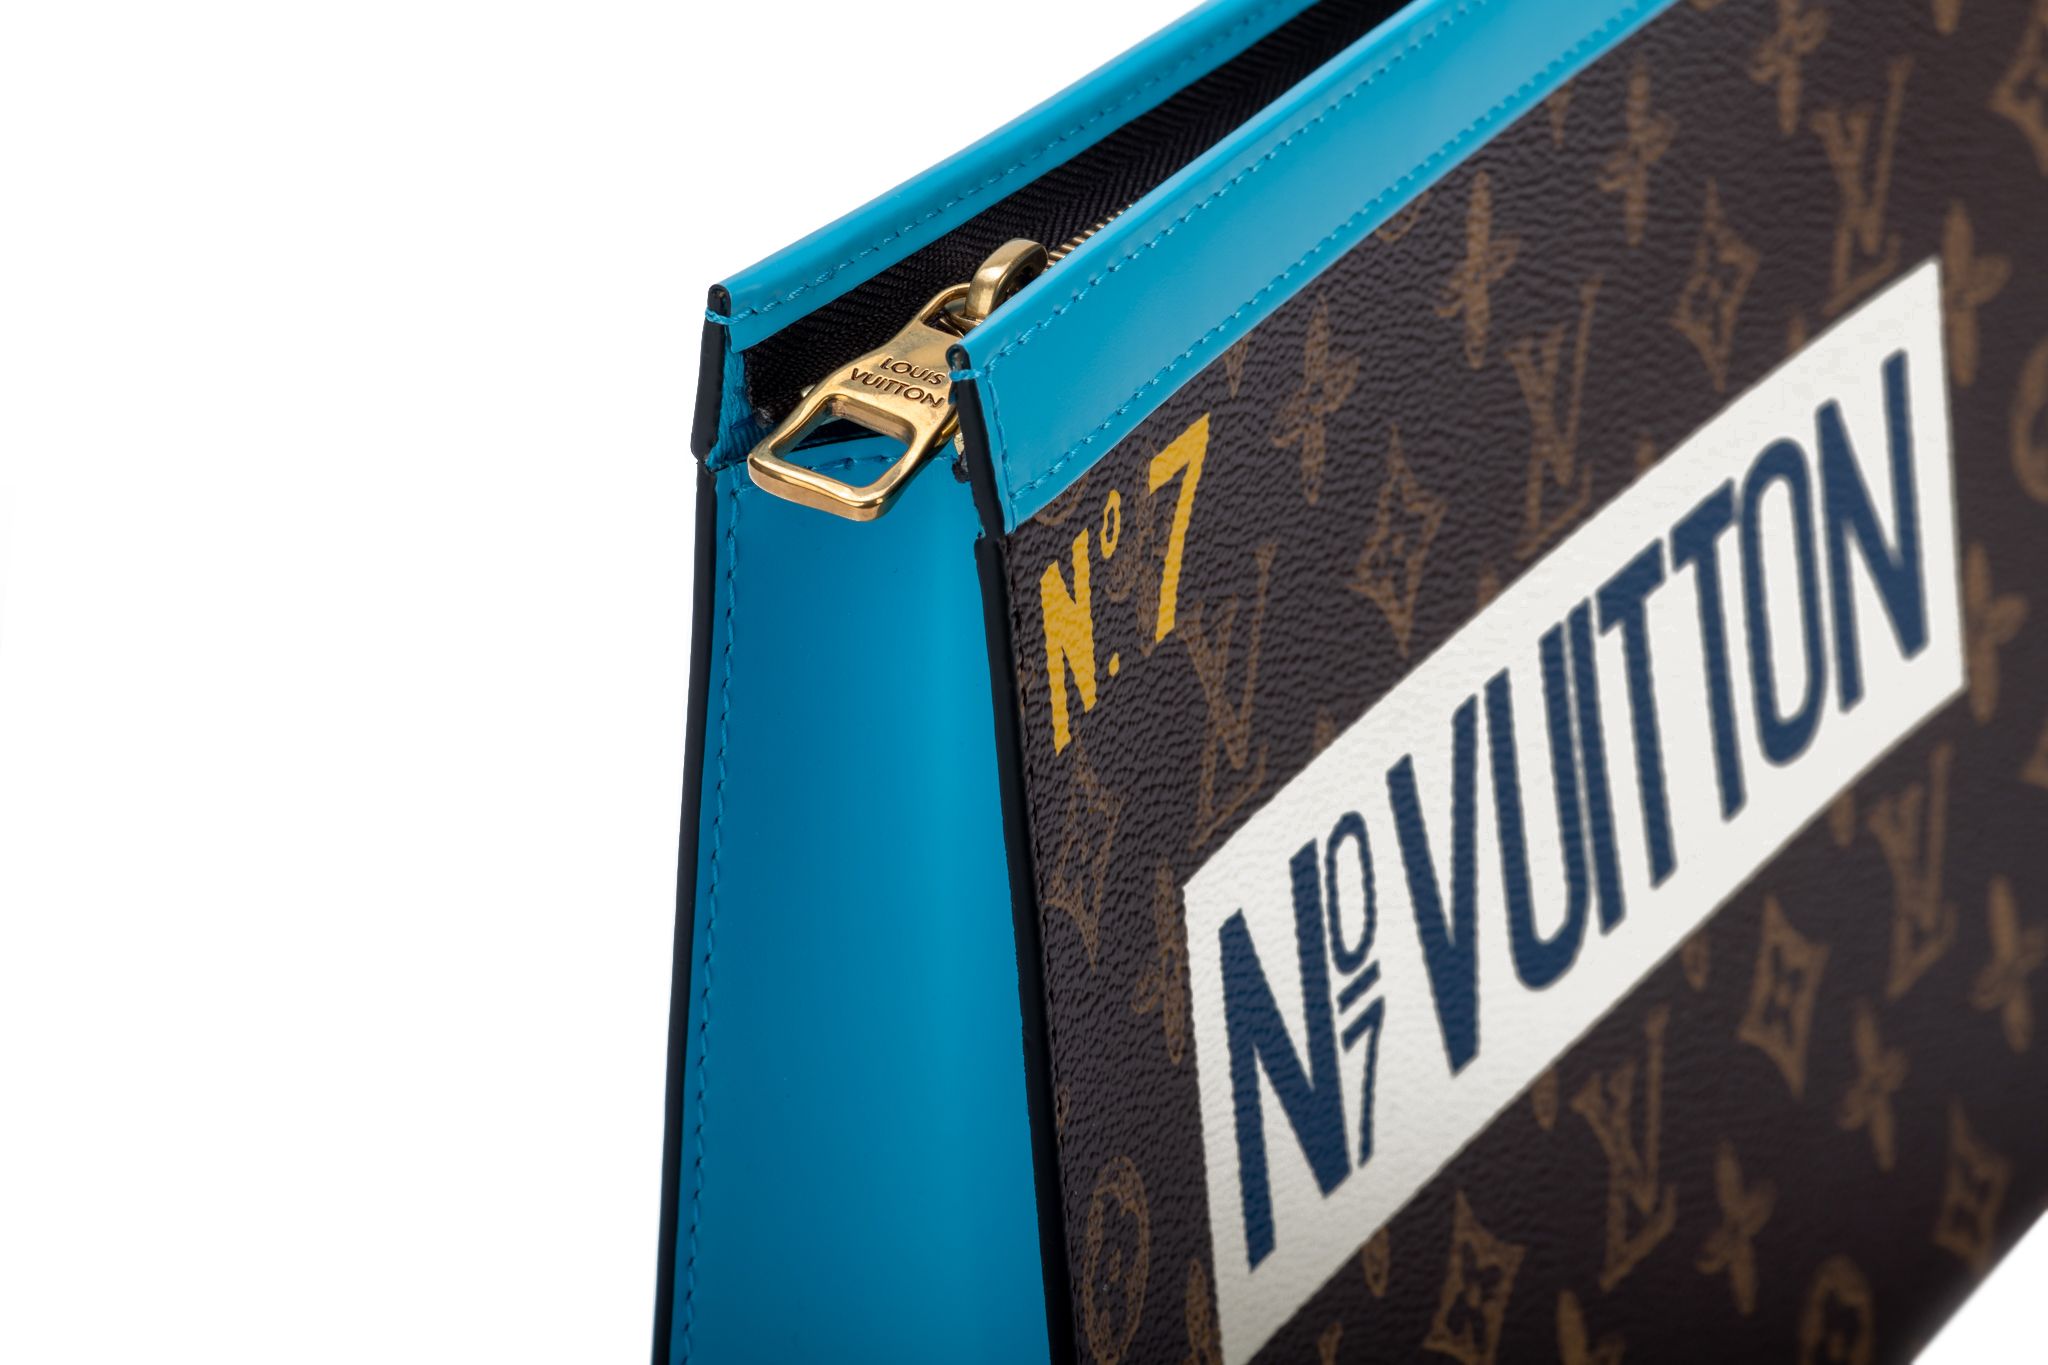 NWT Louis Vuitton Wheel box bag Virgil Abloh No 7